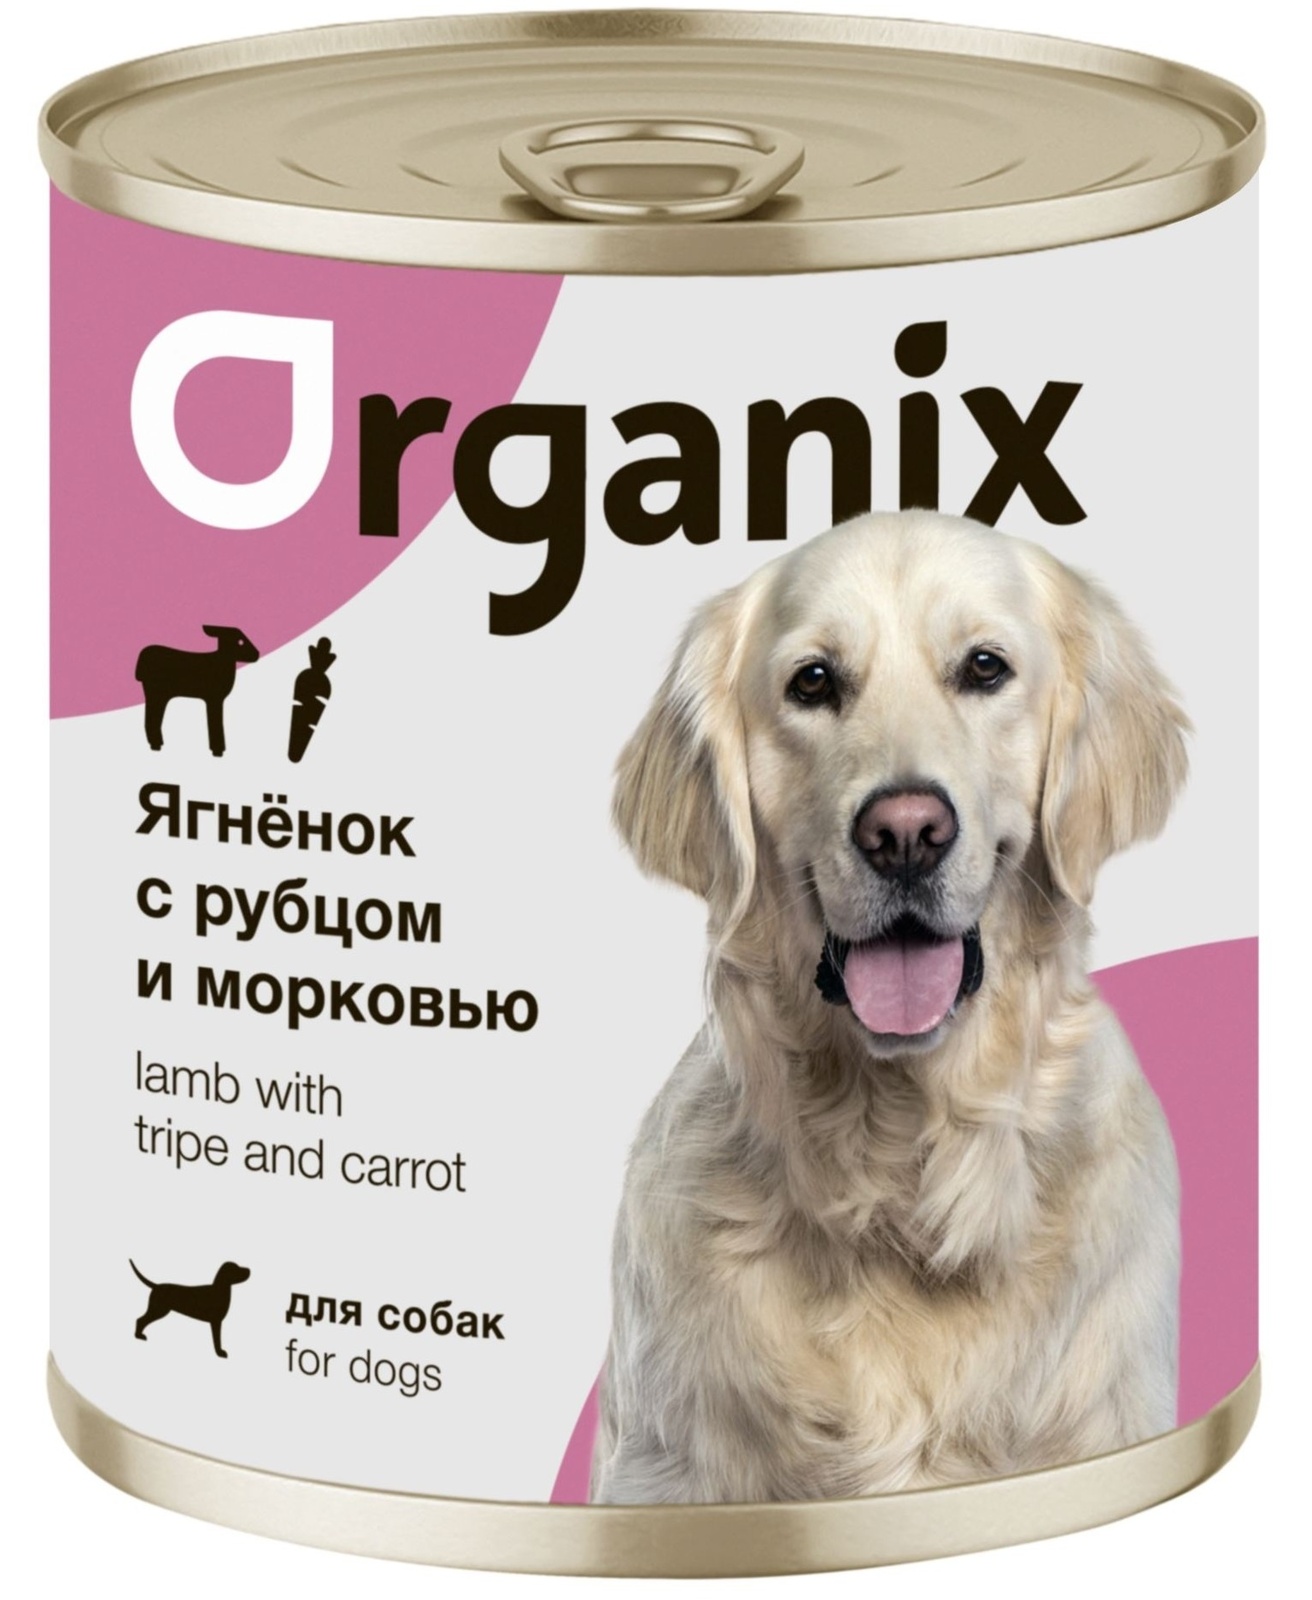 Organix консервы Organix консервы для собак Ягненок с рубцом и морковью (750 г) organix для взрослых собак с ягненком рубцом и морковью 750 гр